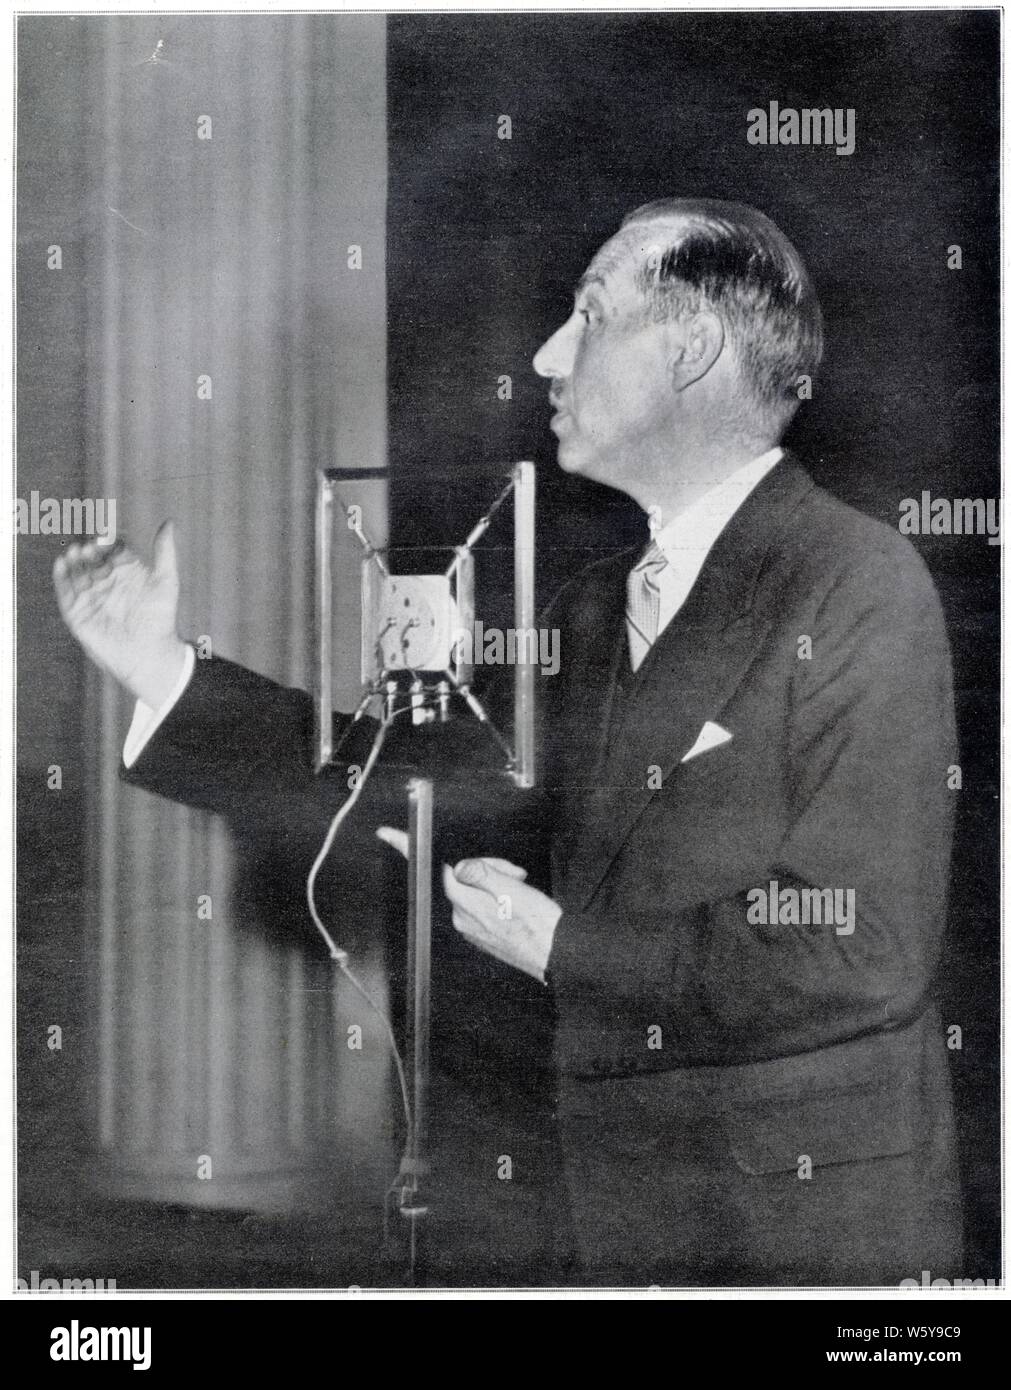 PAUL GUILLAUME VAN ZEELAND. 1937. PRONONCANT À BRUXELLES, L'AVANT-VEILLE, SON DERNIER DISCOURS. Stockfoto